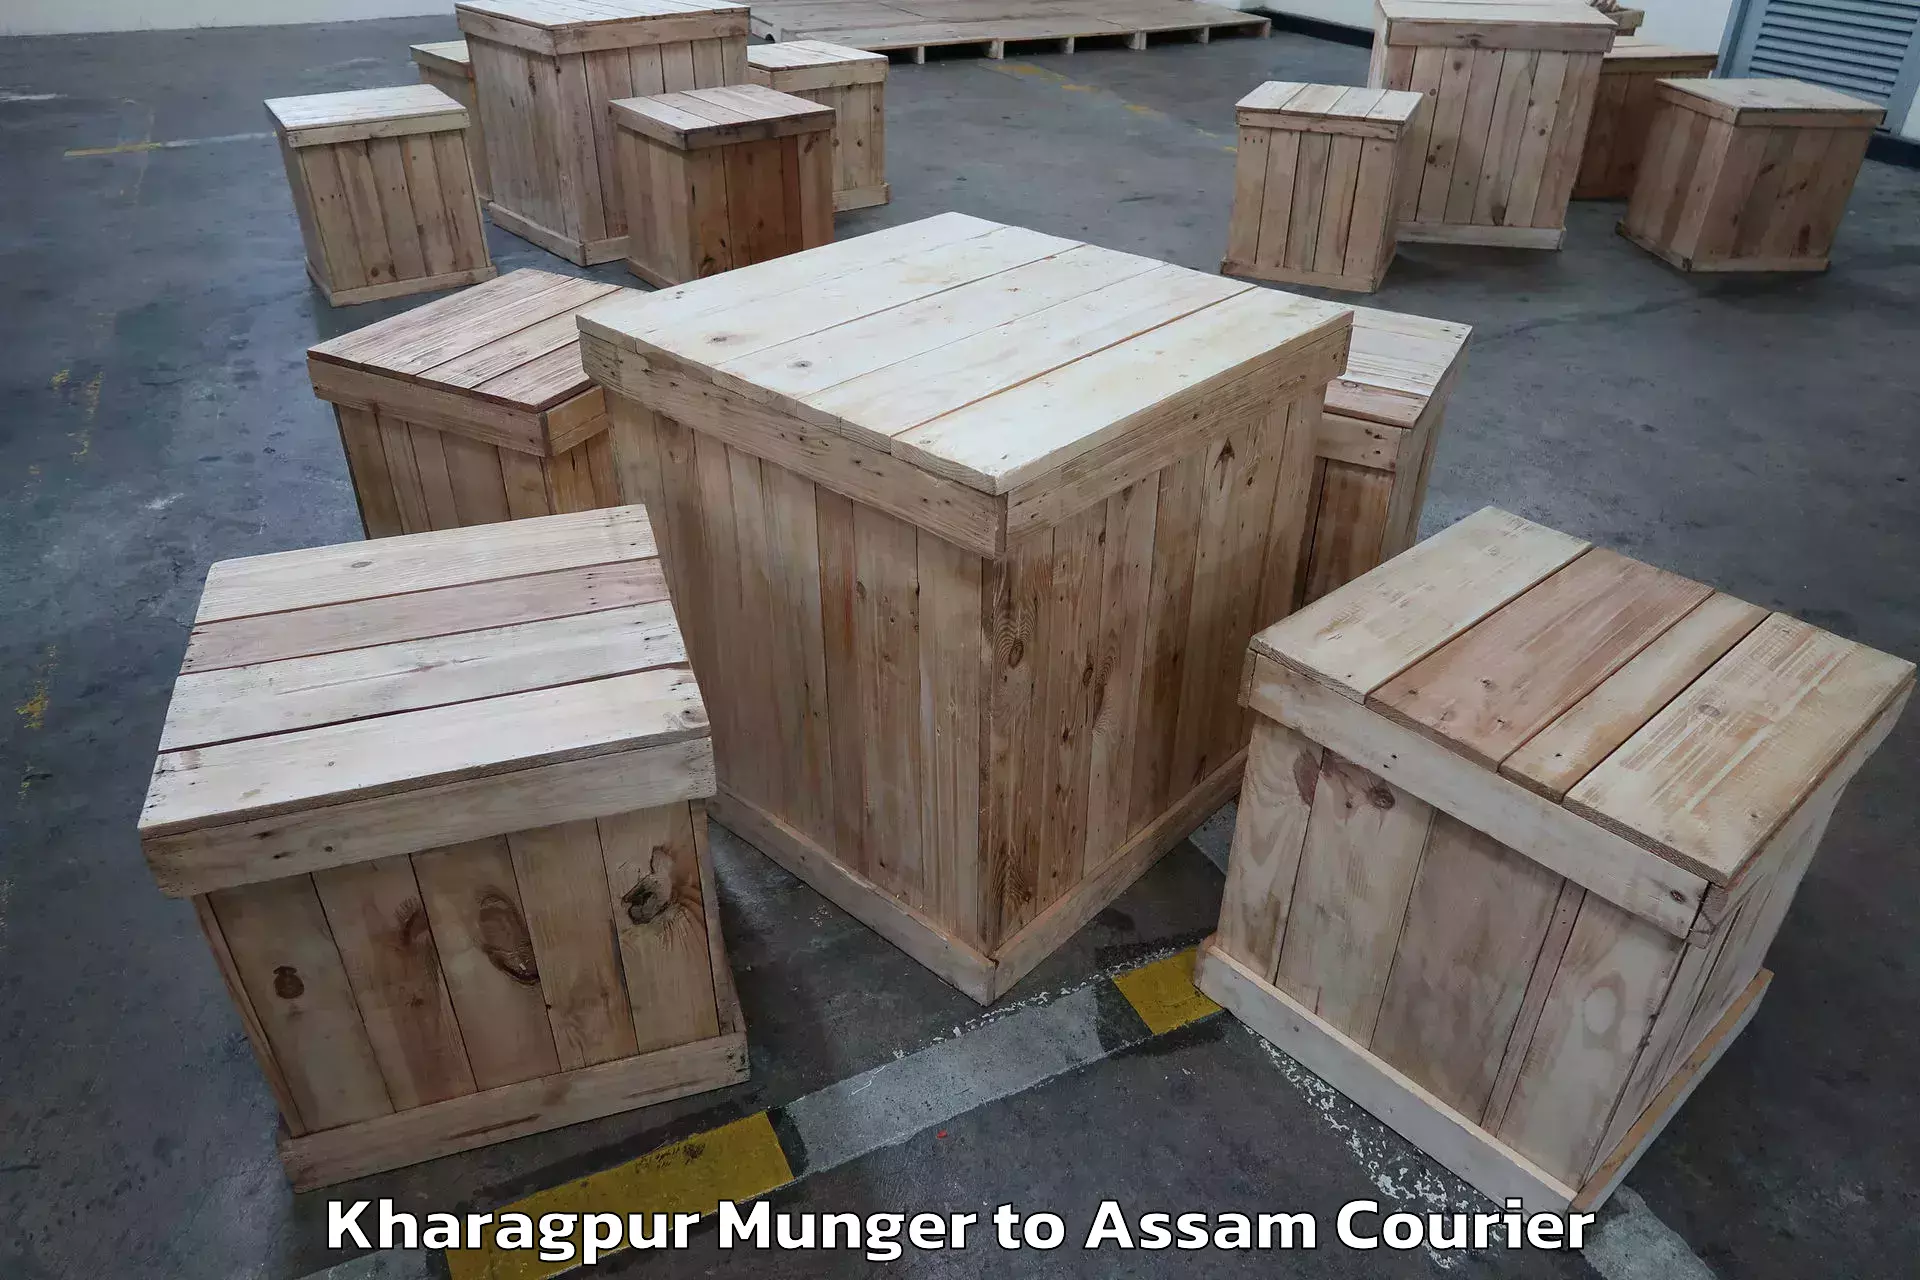 Furniture moving experts Kharagpur Munger to Baihata